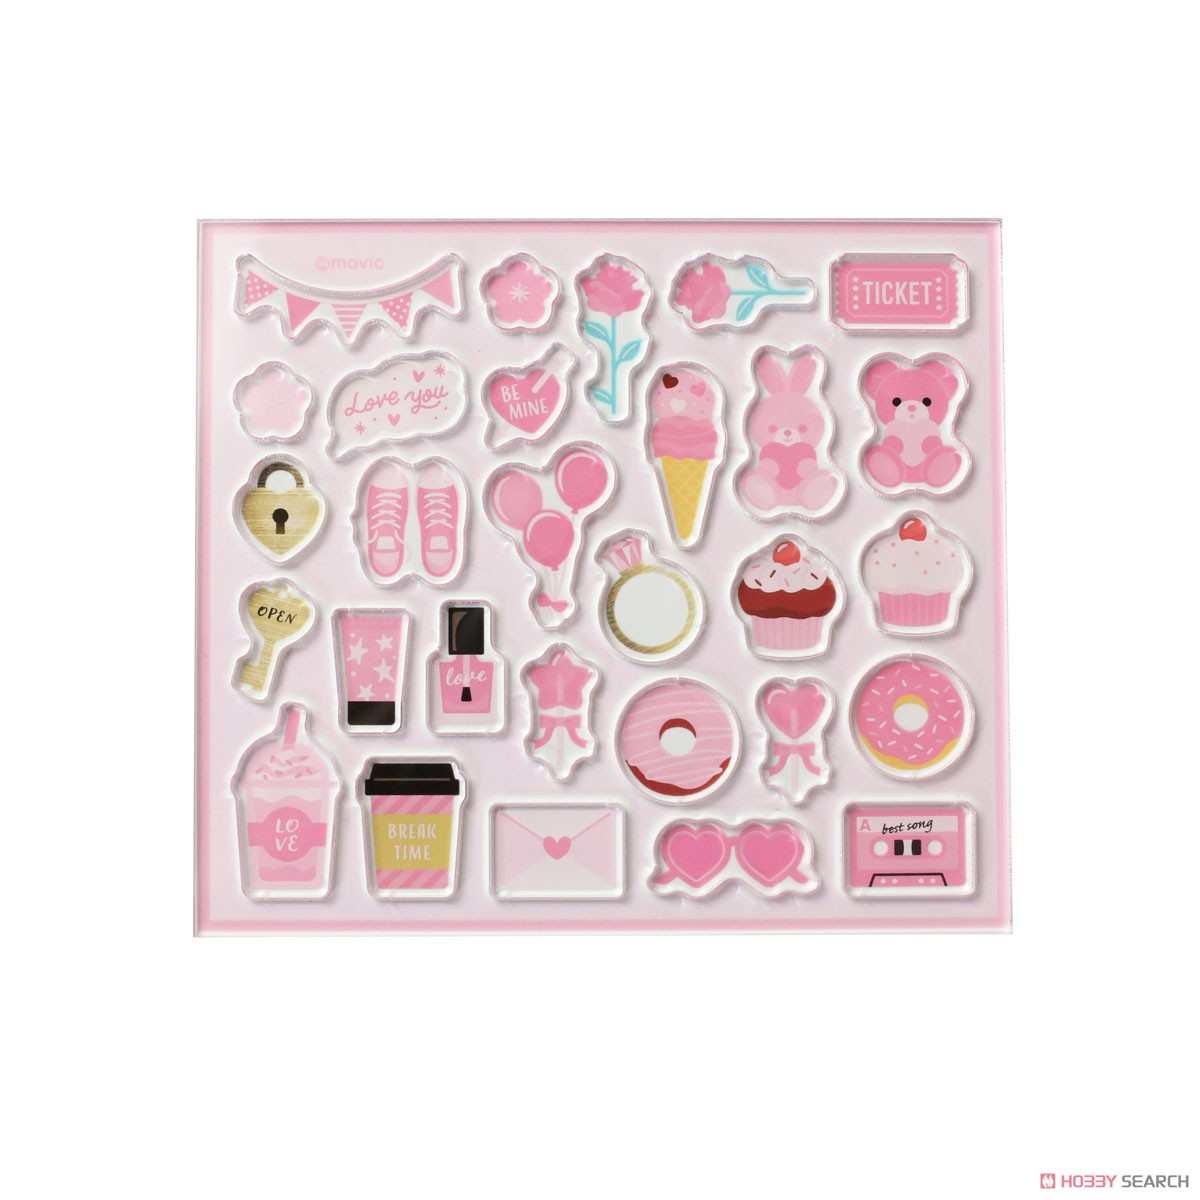 「ノンキャラオリジナル」 カスタマニアピース ピンク (キャラクターグッズ) 商品画像1